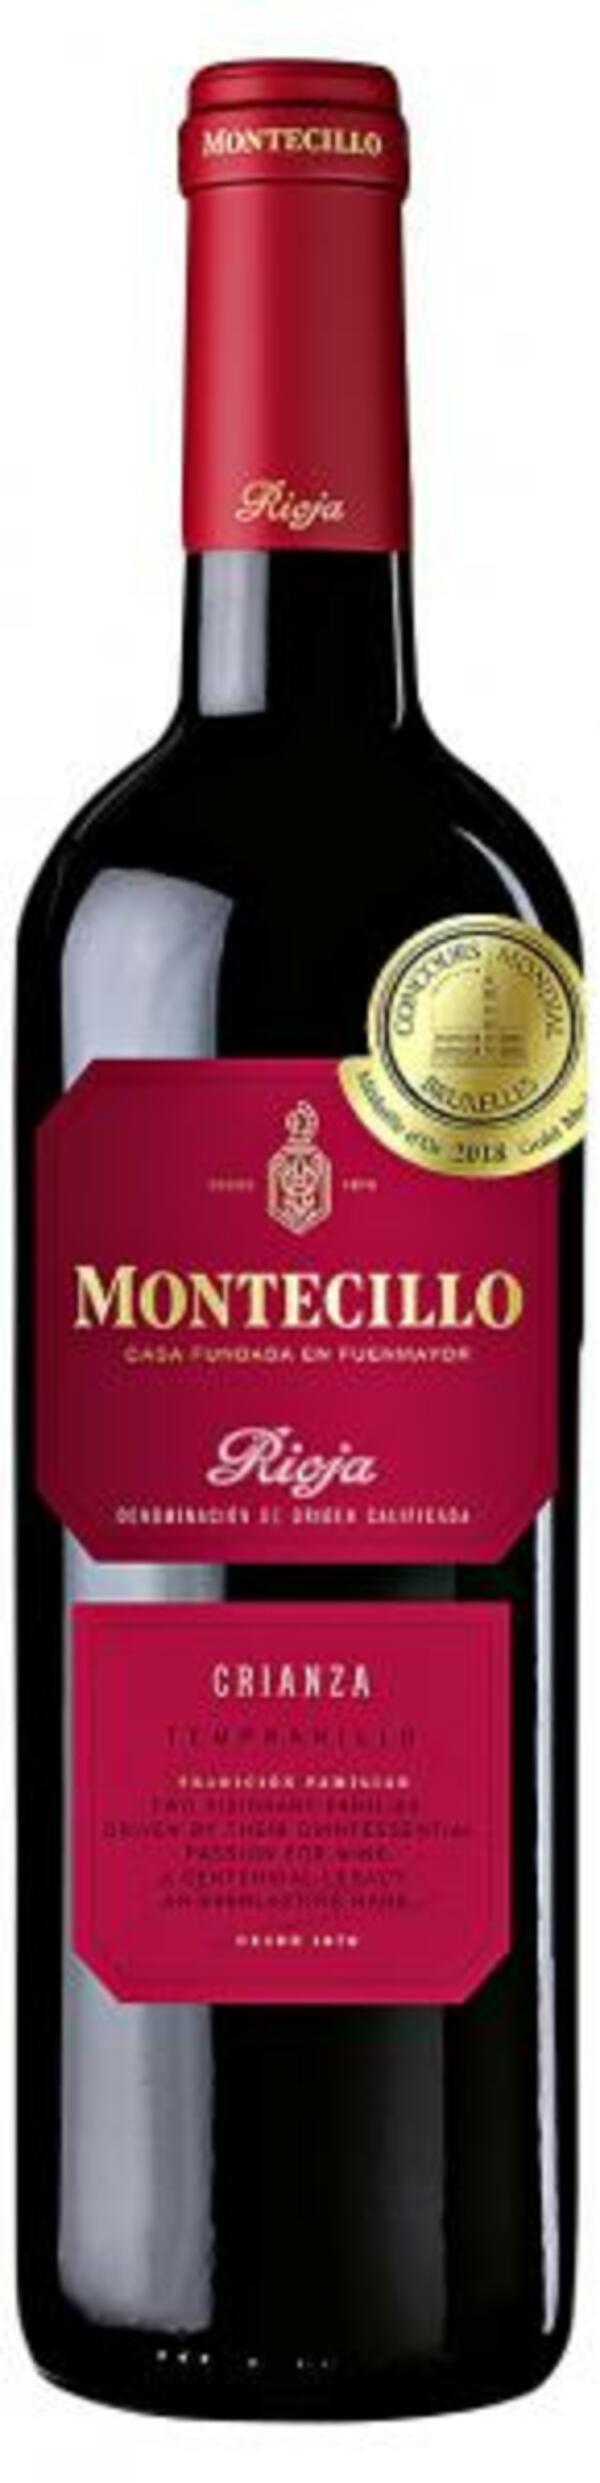 Bild 1 von Montecillo Crianza Rioja Rotwein trocken